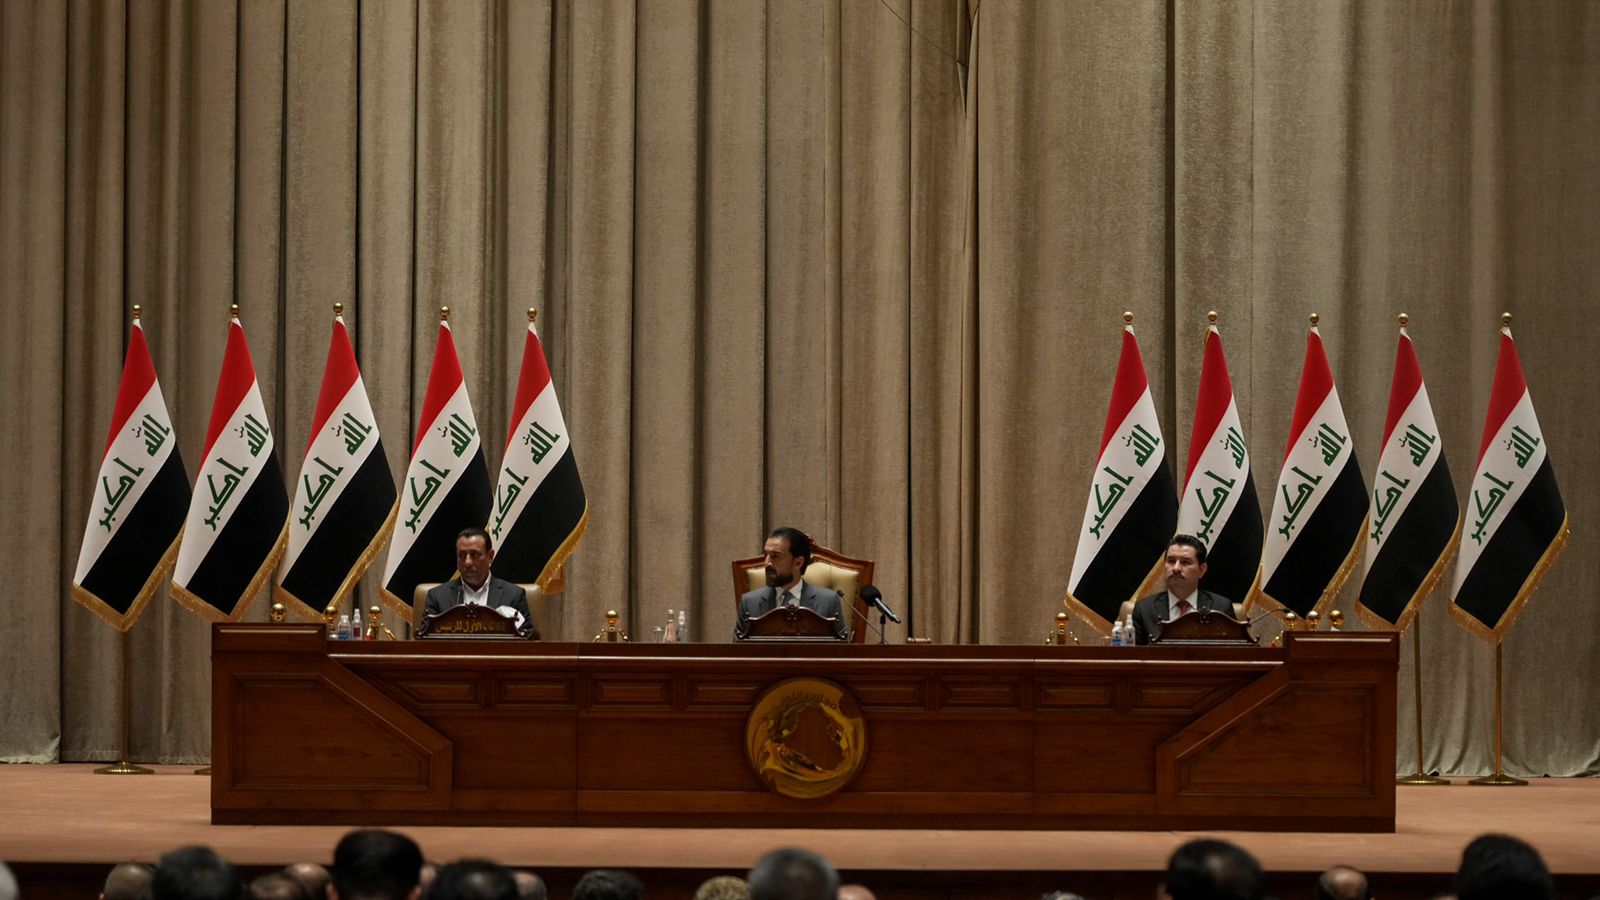 البرلمان يعقد اجتماعاً موسعاً لمناقشة "الاعتداءات" التركية و الايرانية على الاراضي العراقية